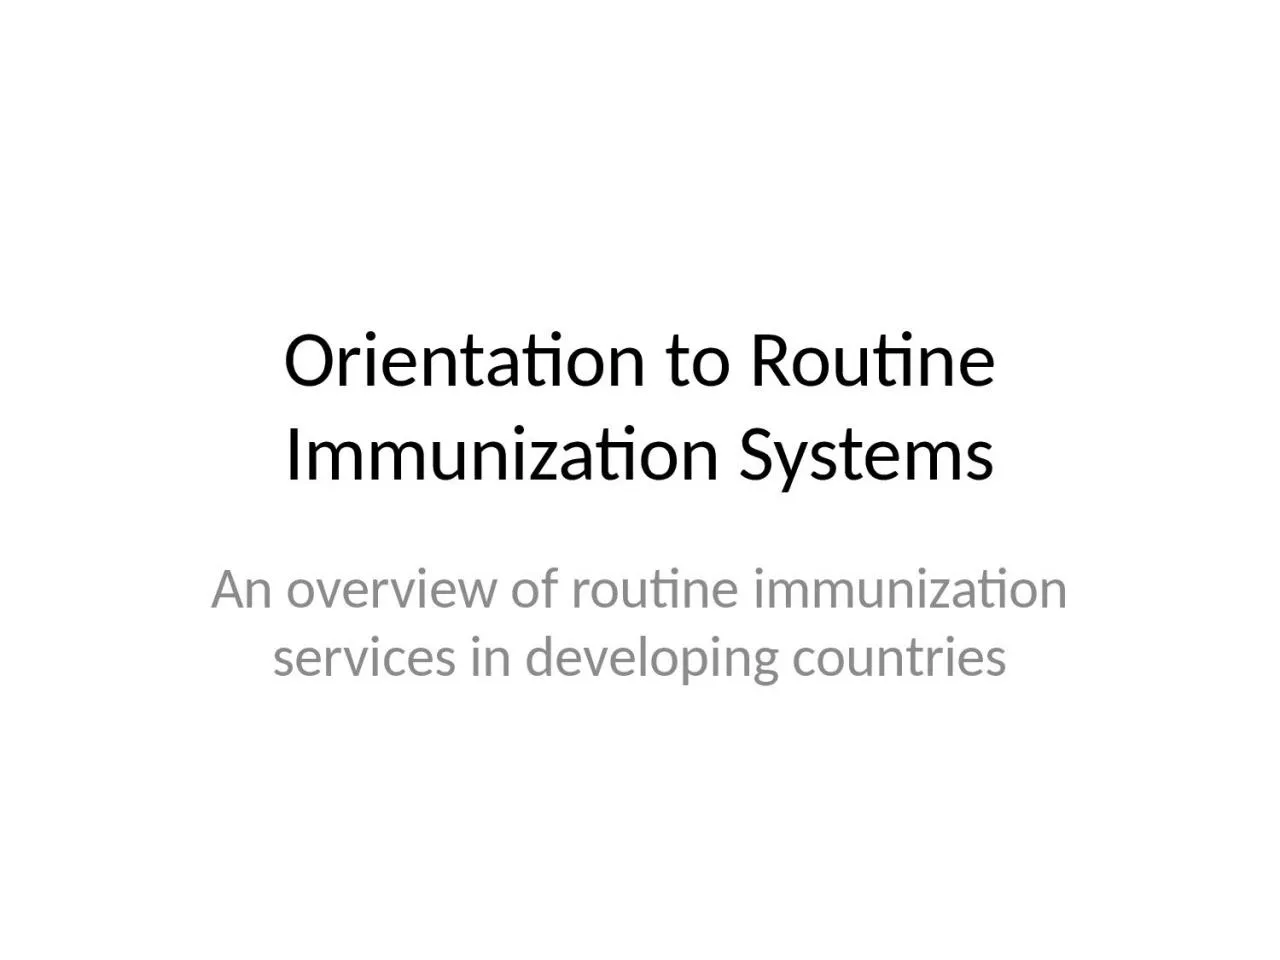 Orientation to Routine Immunization Systems